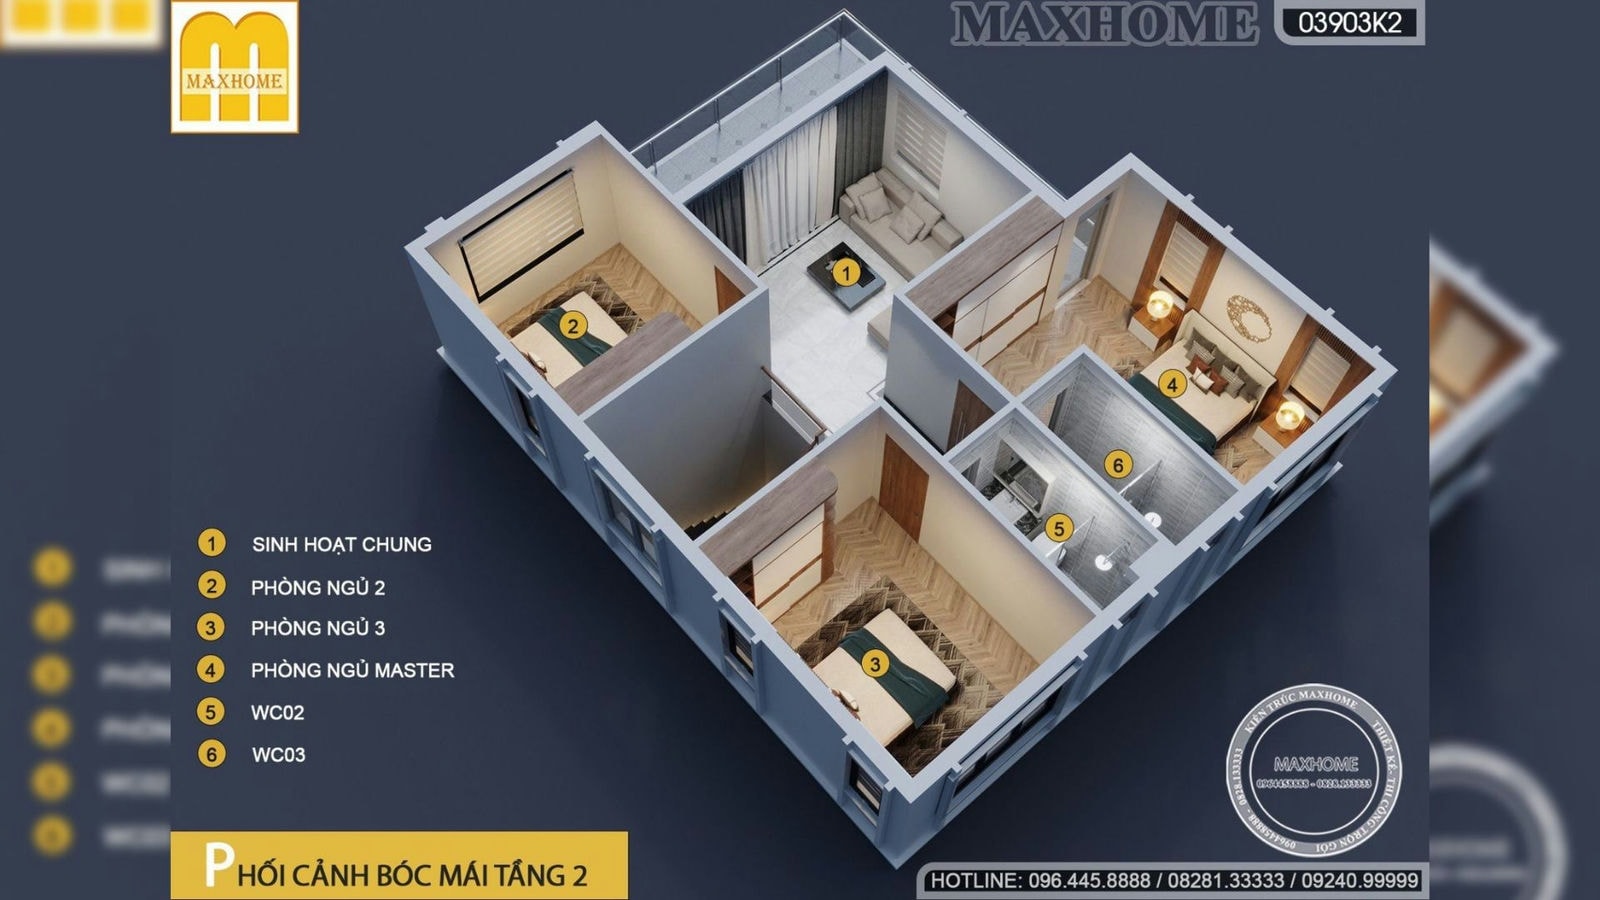 Bản vẽ thiết kế nhà 2 tầng 1 tum hiện đại do Maxhome thiết kế | MH01709